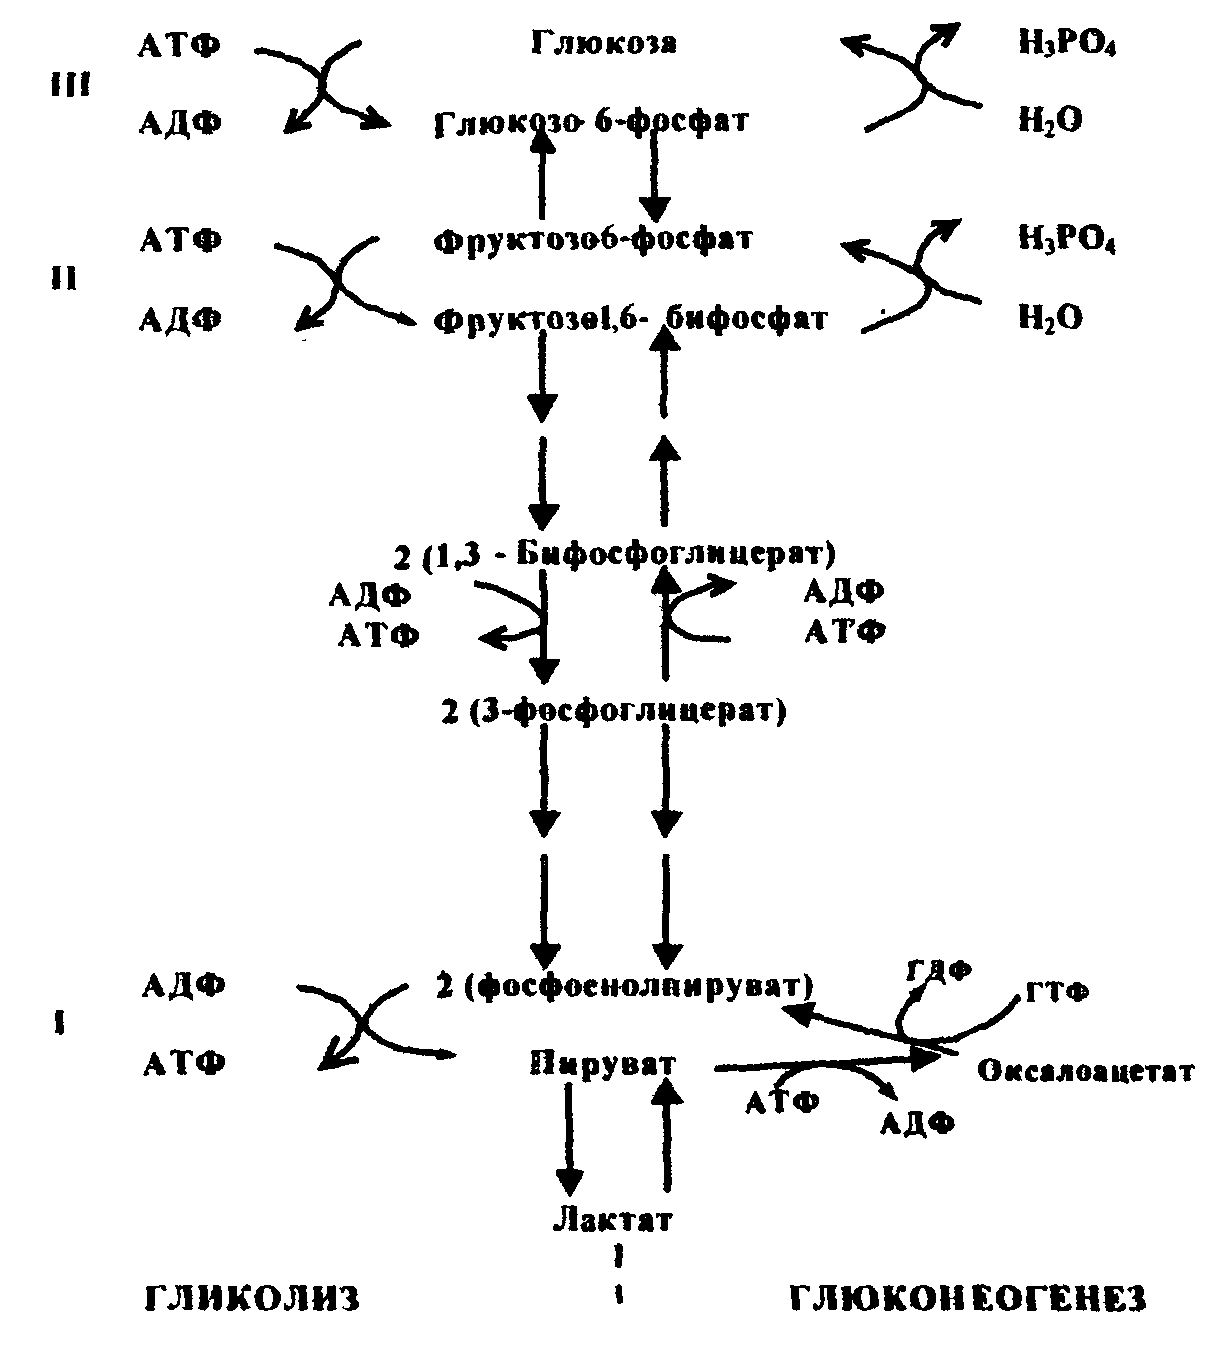 Аэробное фосфорилирование глюкозы. Схема глюконеогенеза из лактата. Схема синтеза Глюкозы аланина.. Аэробный распад Глюкозы схема. Биосинтез Глюкозы (глюконеогенез) из глицерина и лактата.